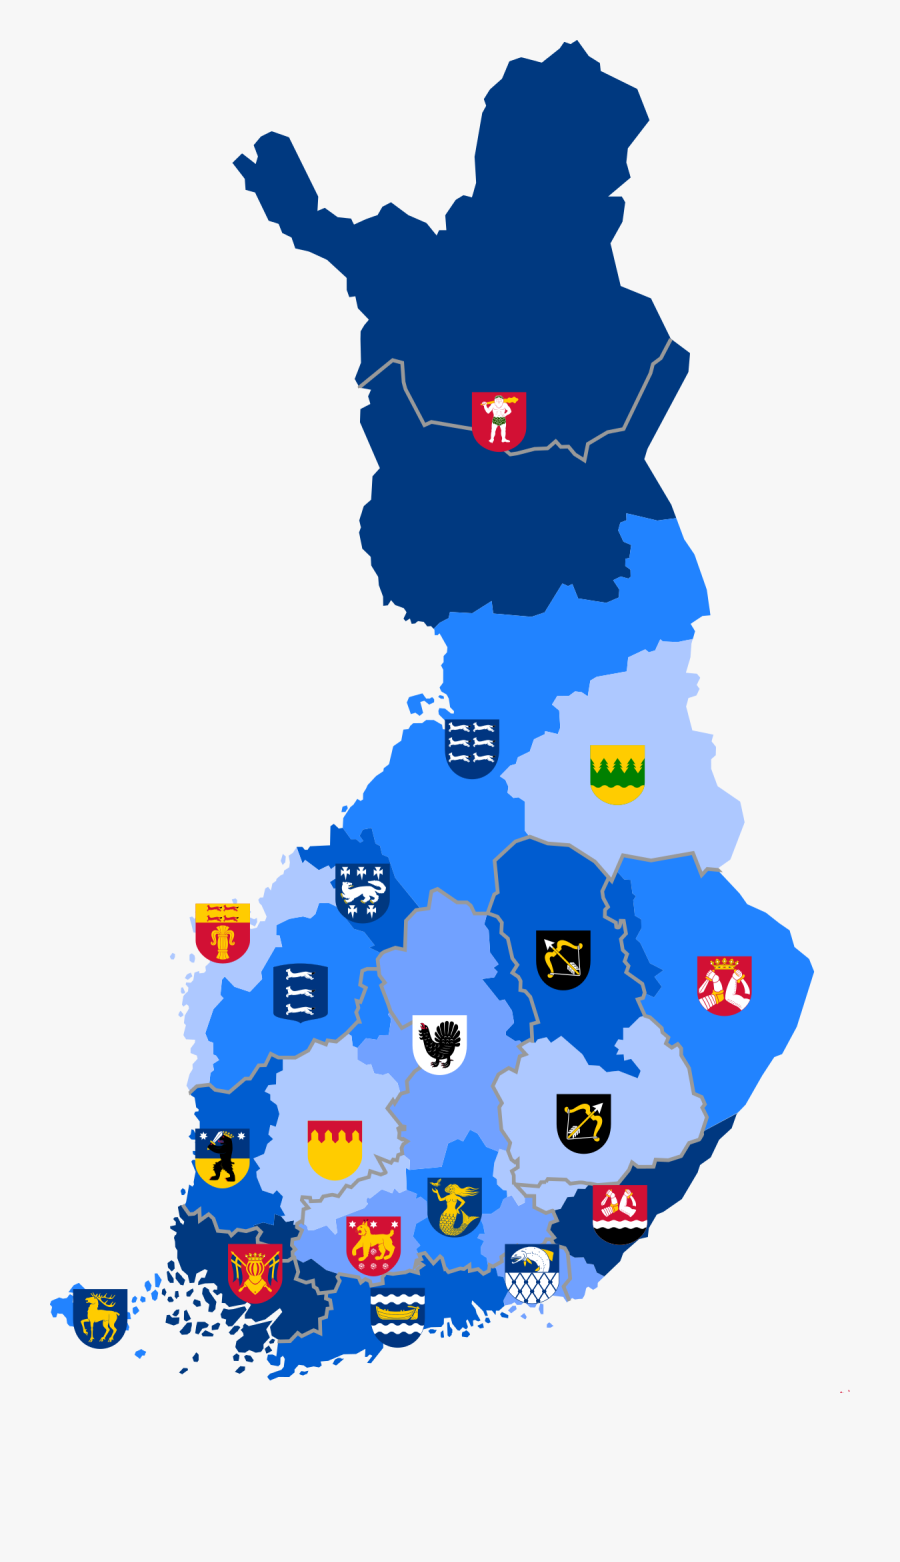 Transparent Region Clipart - Finland Election Map 2019, Transparent Clipart